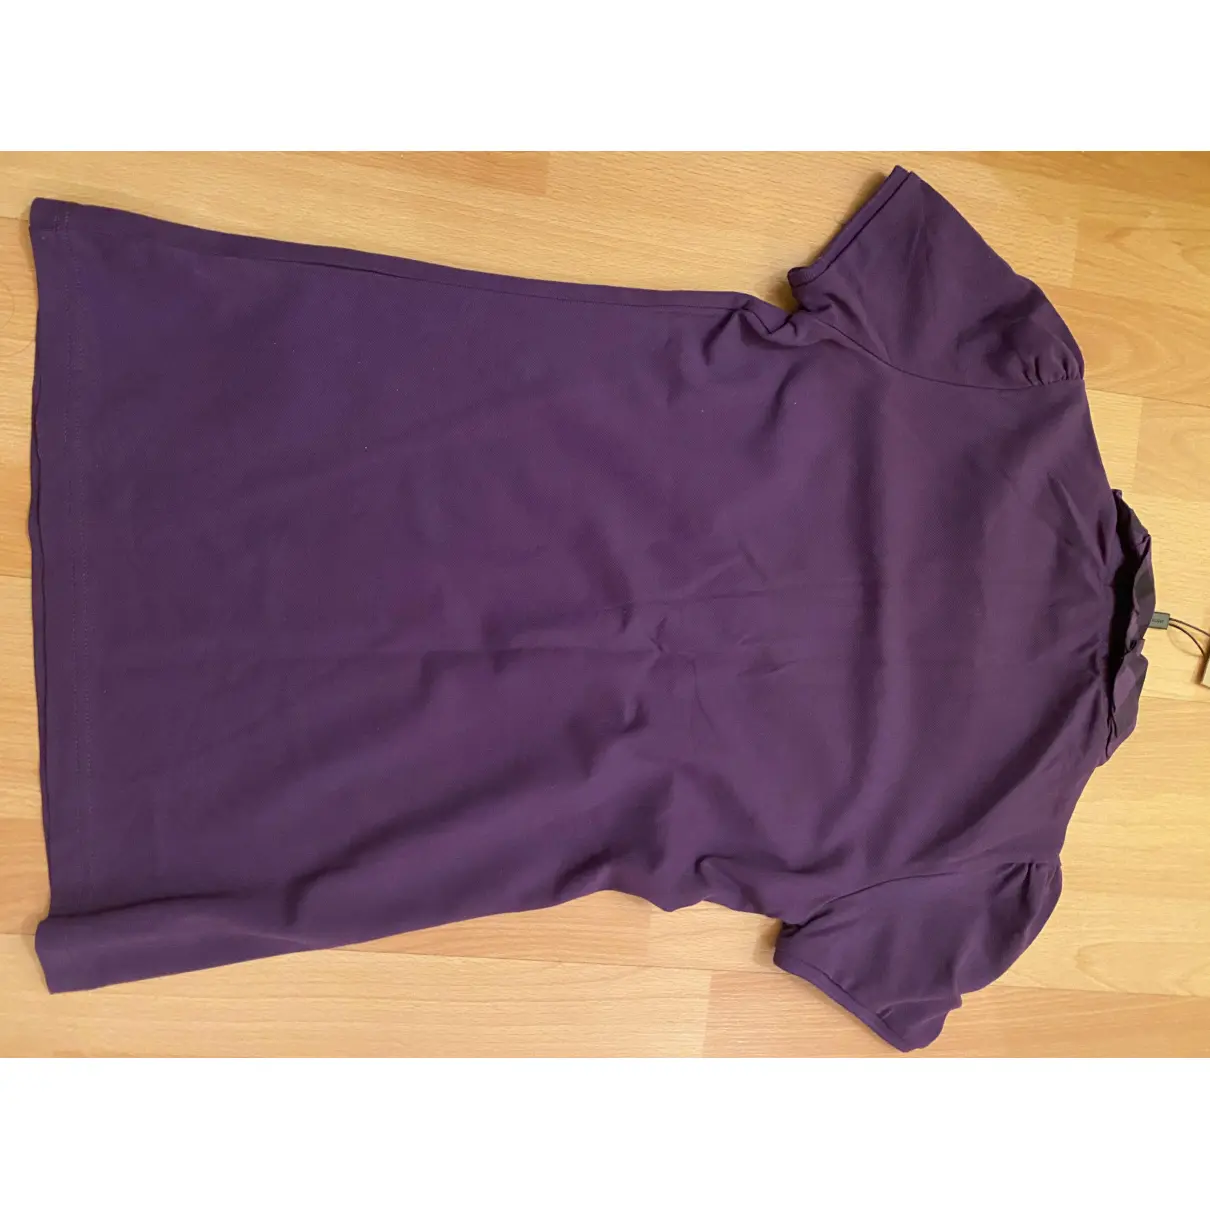 Buy Burberry Purple Cotton Top online